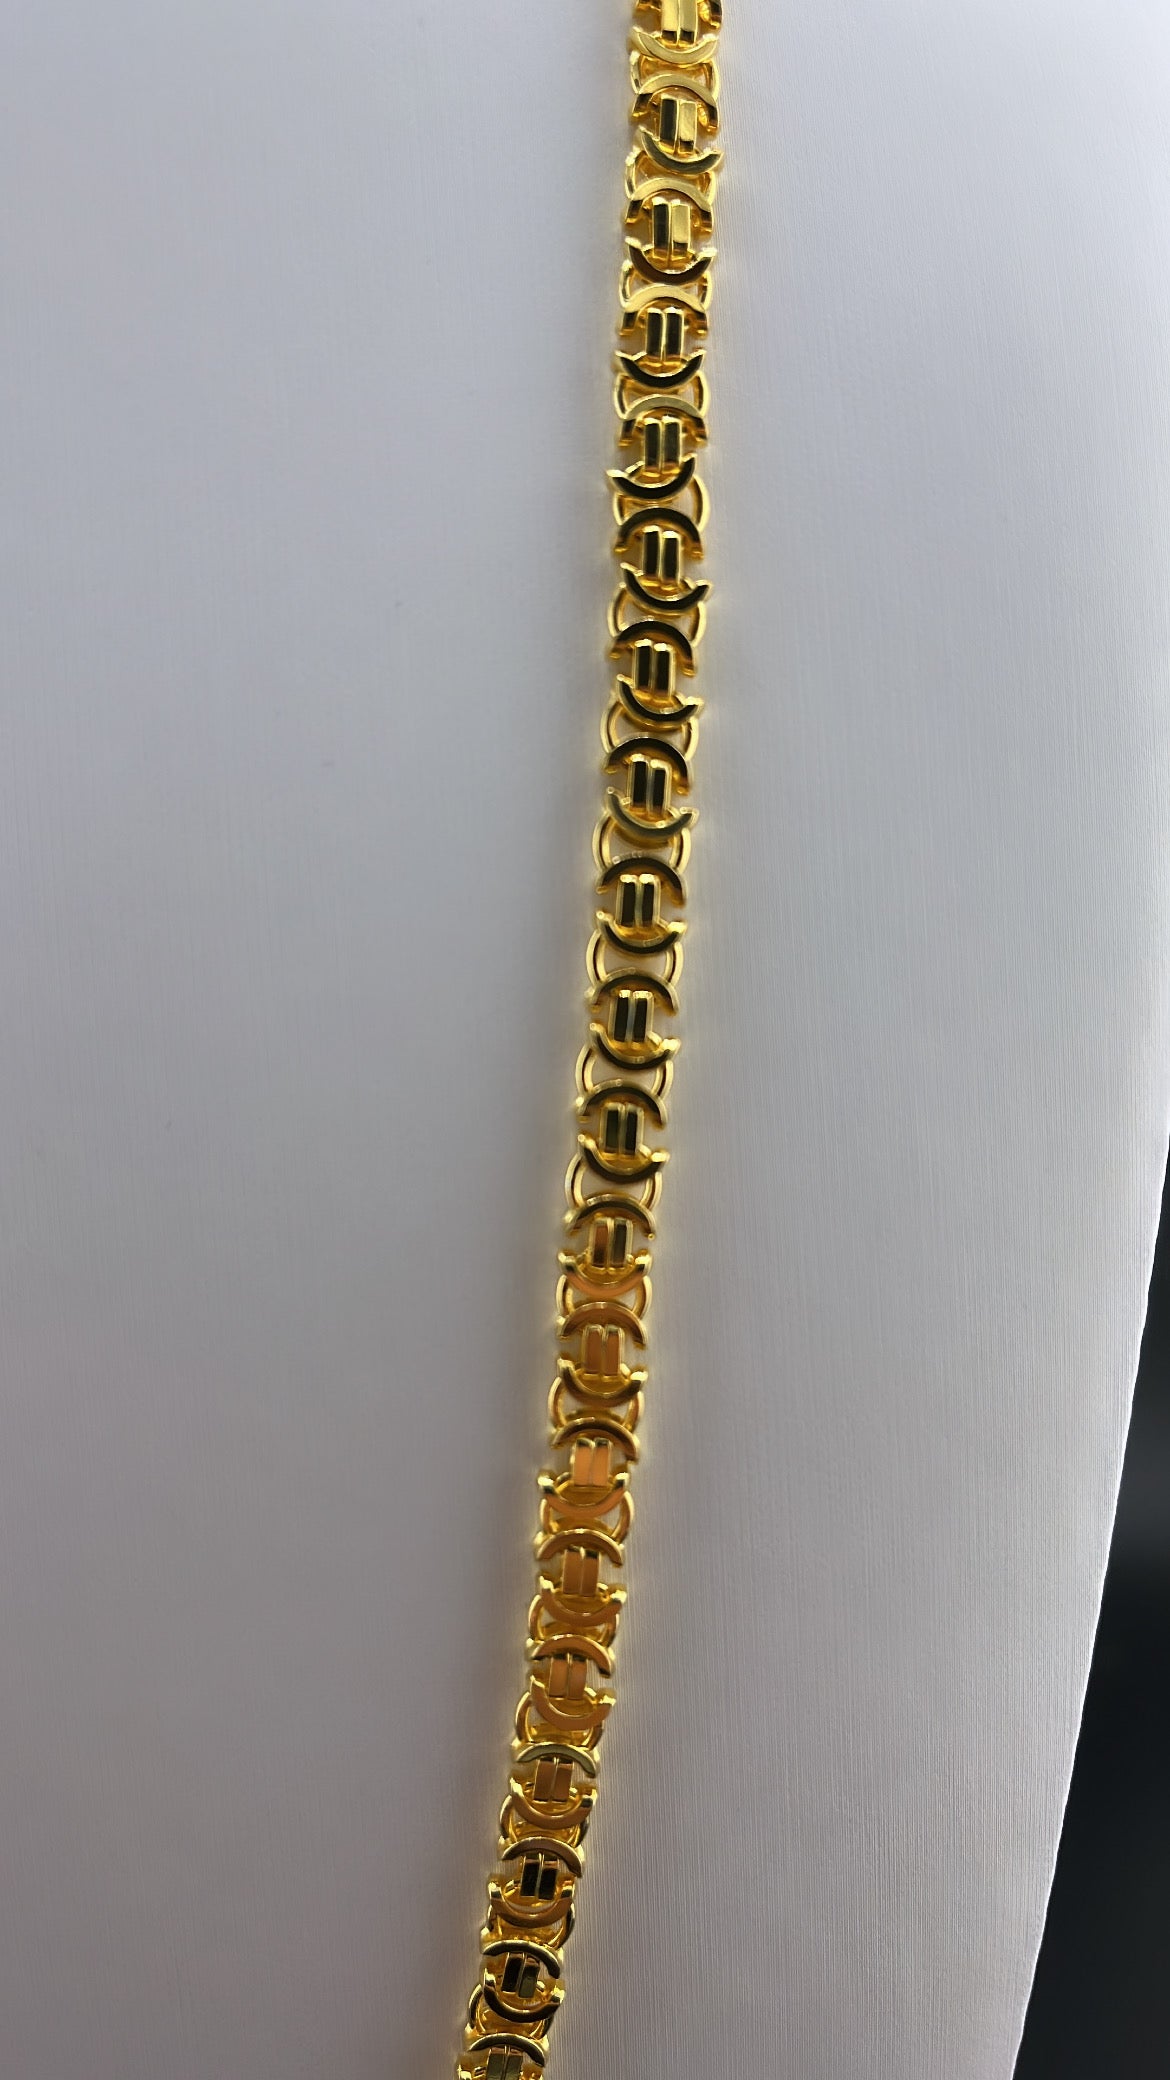 Flache Königskette (Etrsuker) - 5mm breit